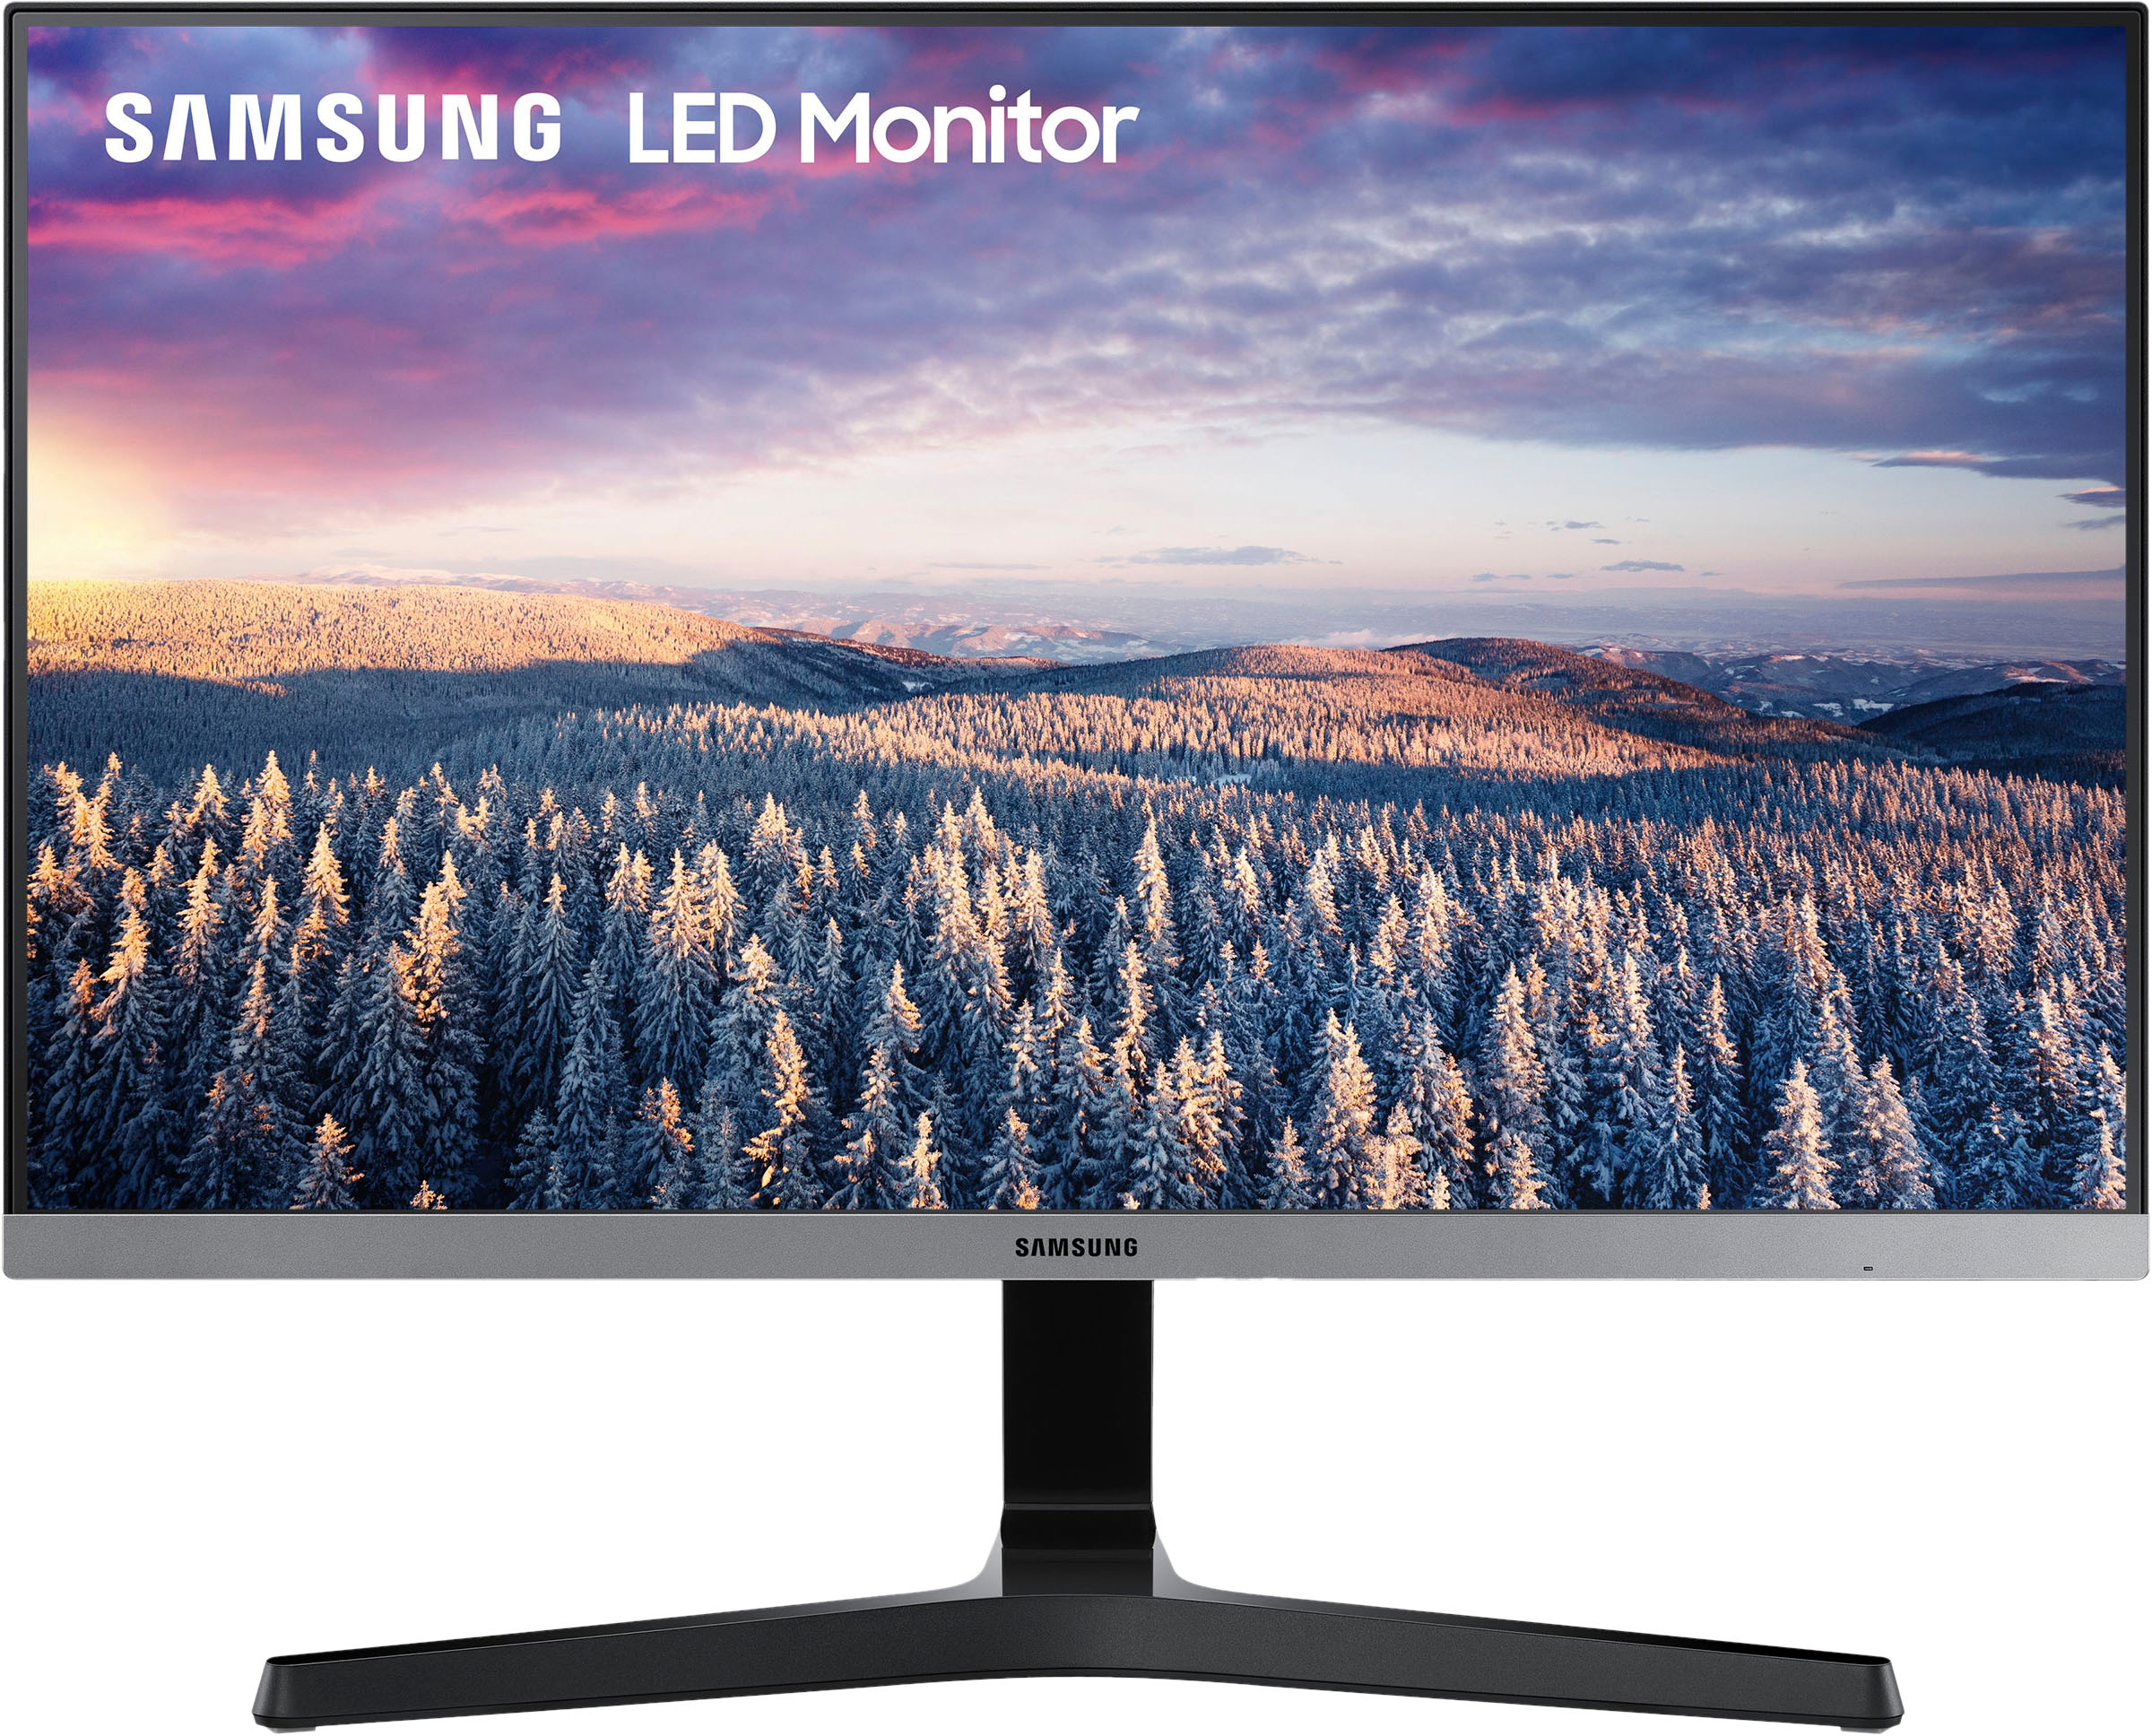 Hãy đến với tôi để khoe sở thích của bạn với Samsung LED Monitor. Với độ bão hòa chất lượng, màn hình sẽ làm cho bạn bị lôi cuốn bởi hình ảnh sống động và chân thật, và đảm bảo bạn được sở hữu trải nghiệm tuyệt vời.